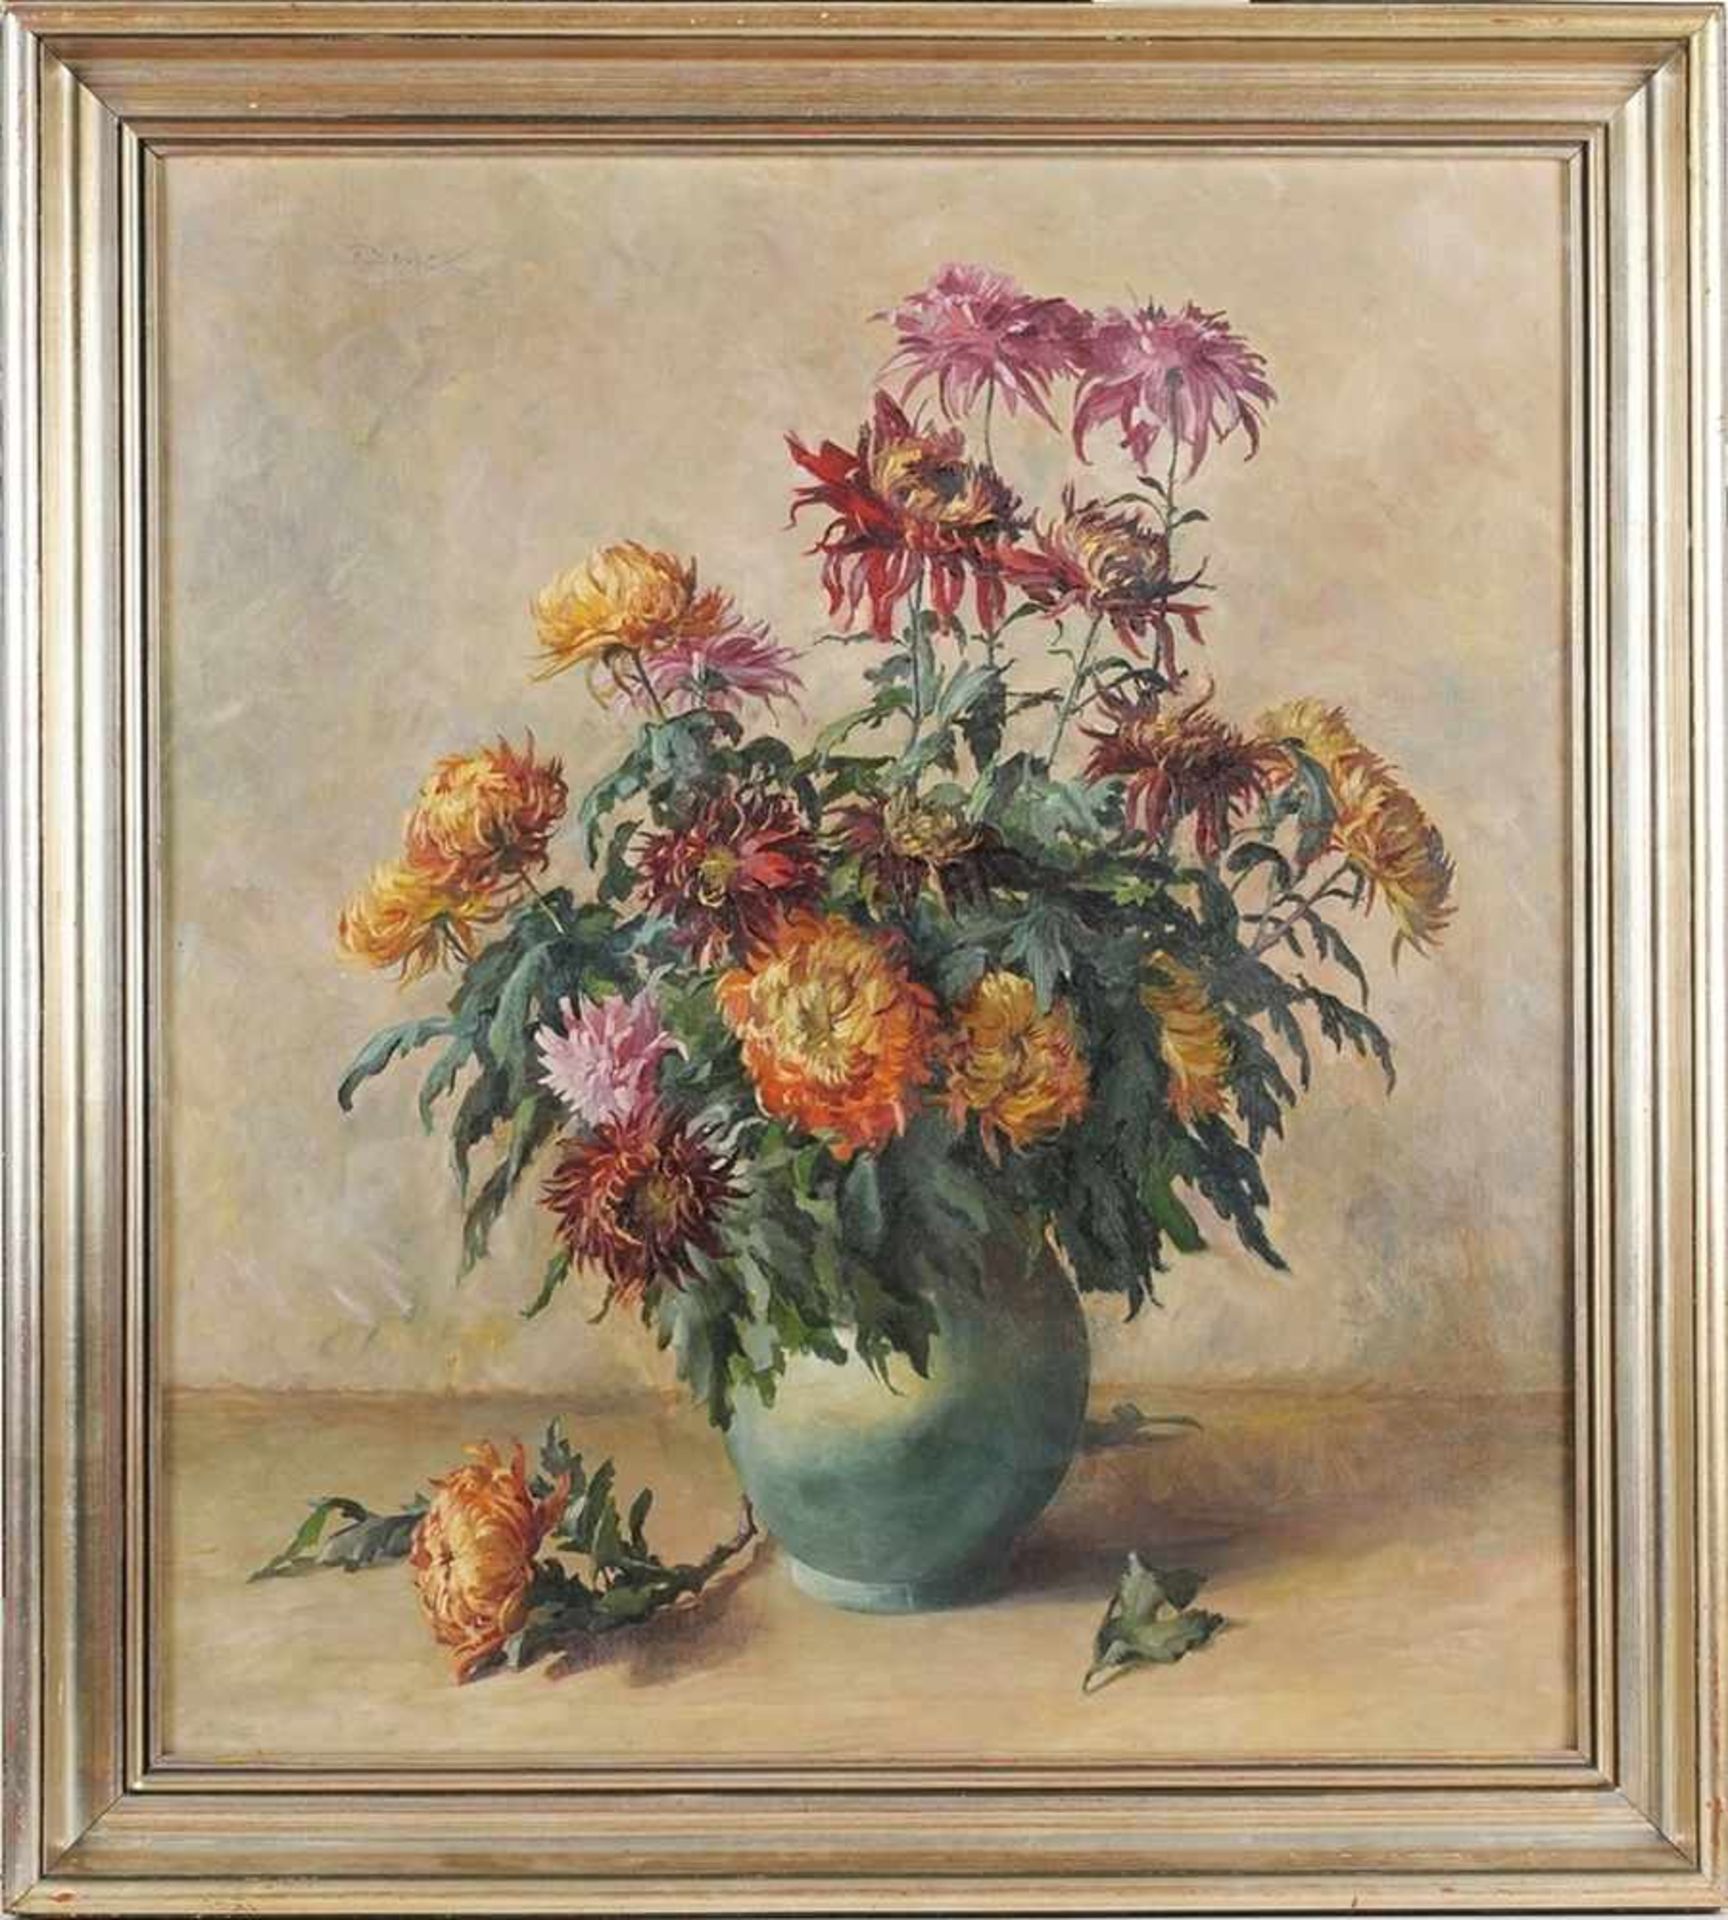 Unbekannt (Deutscher Maler, 2. D. 20. Jh.) Öl/Lwd. Stillleben mit Chrysanthemen. 90 x 80 cm. Rahmen.